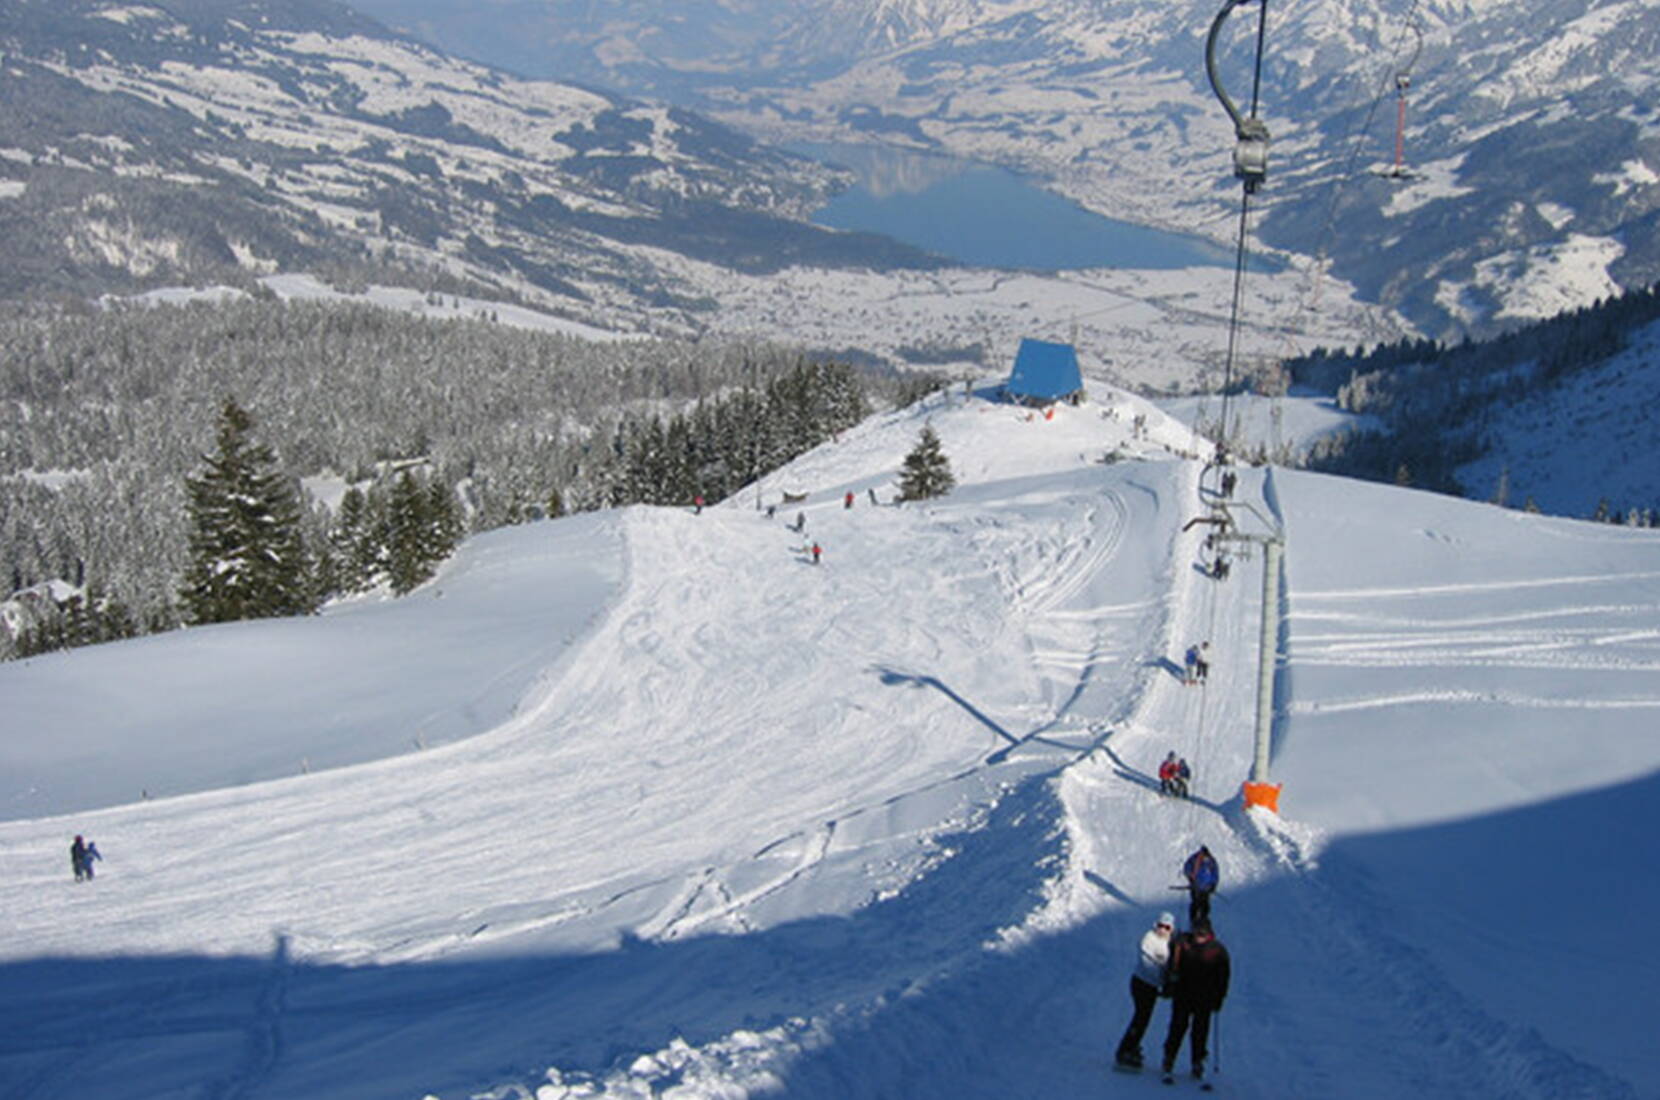 Excursion en famille à Mörlialp. Mörlialp est un domaine skiable typiquement familial avec une offre étonnamment attrayante. Le parking gratuit situé juste à côté des installations et des pistes est particulièrement apprécié.